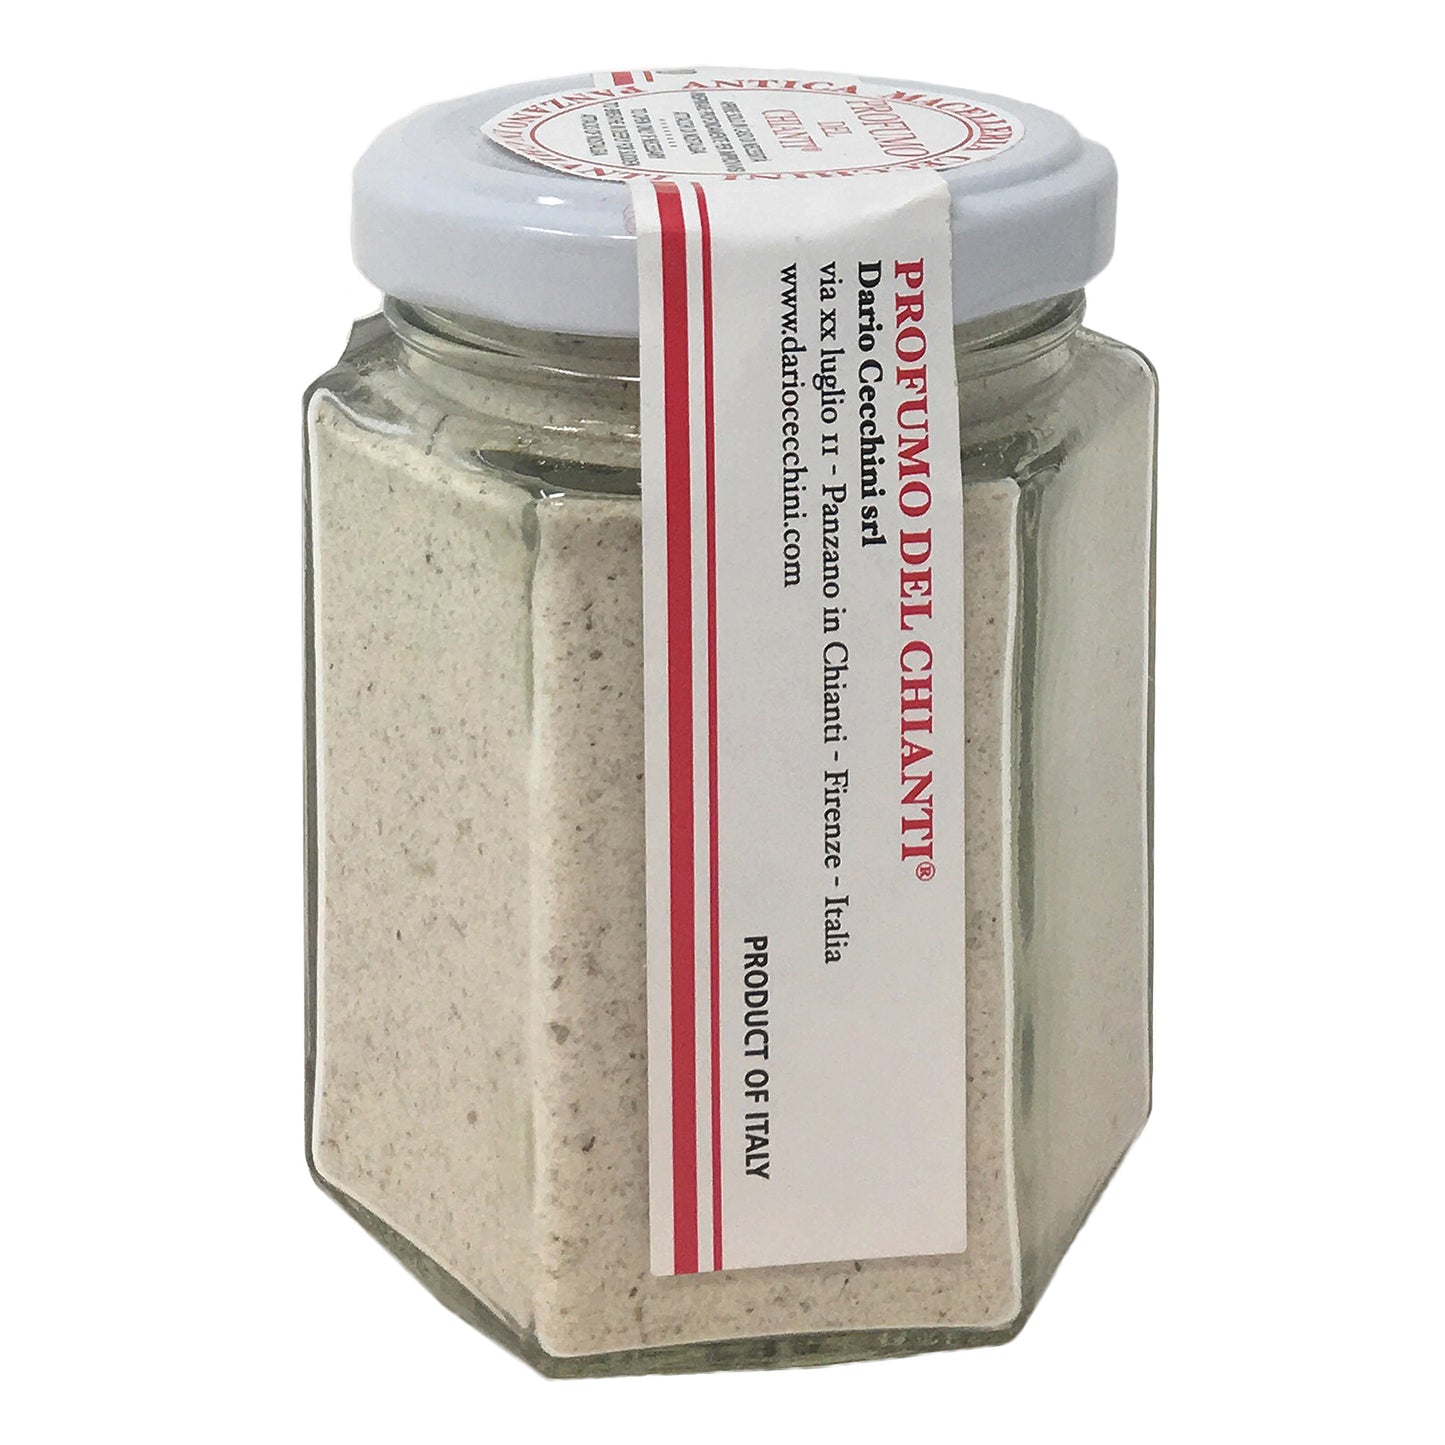 Dario Cecchini Profumo del Chianti Herb Salt Blend